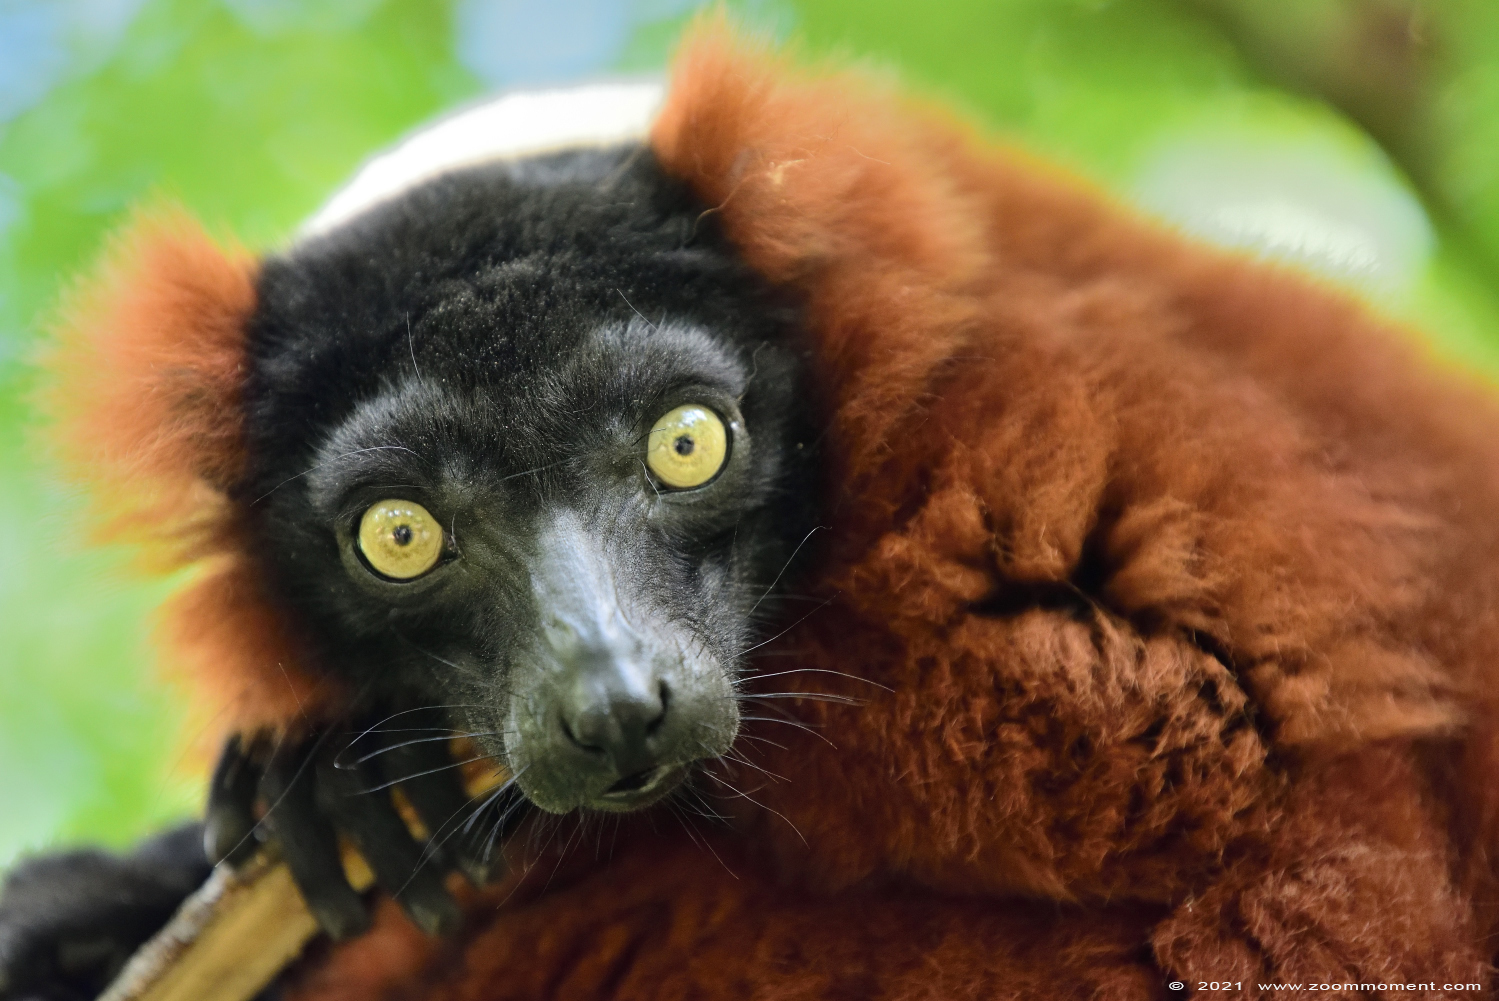 rode vari ( Varecia variegata rubra ) red ruffed lemur
Λέξεις-κλειδιά: Safaripark Beekse Bergen rode vari Varecia variegata rubra red ruffed lemur